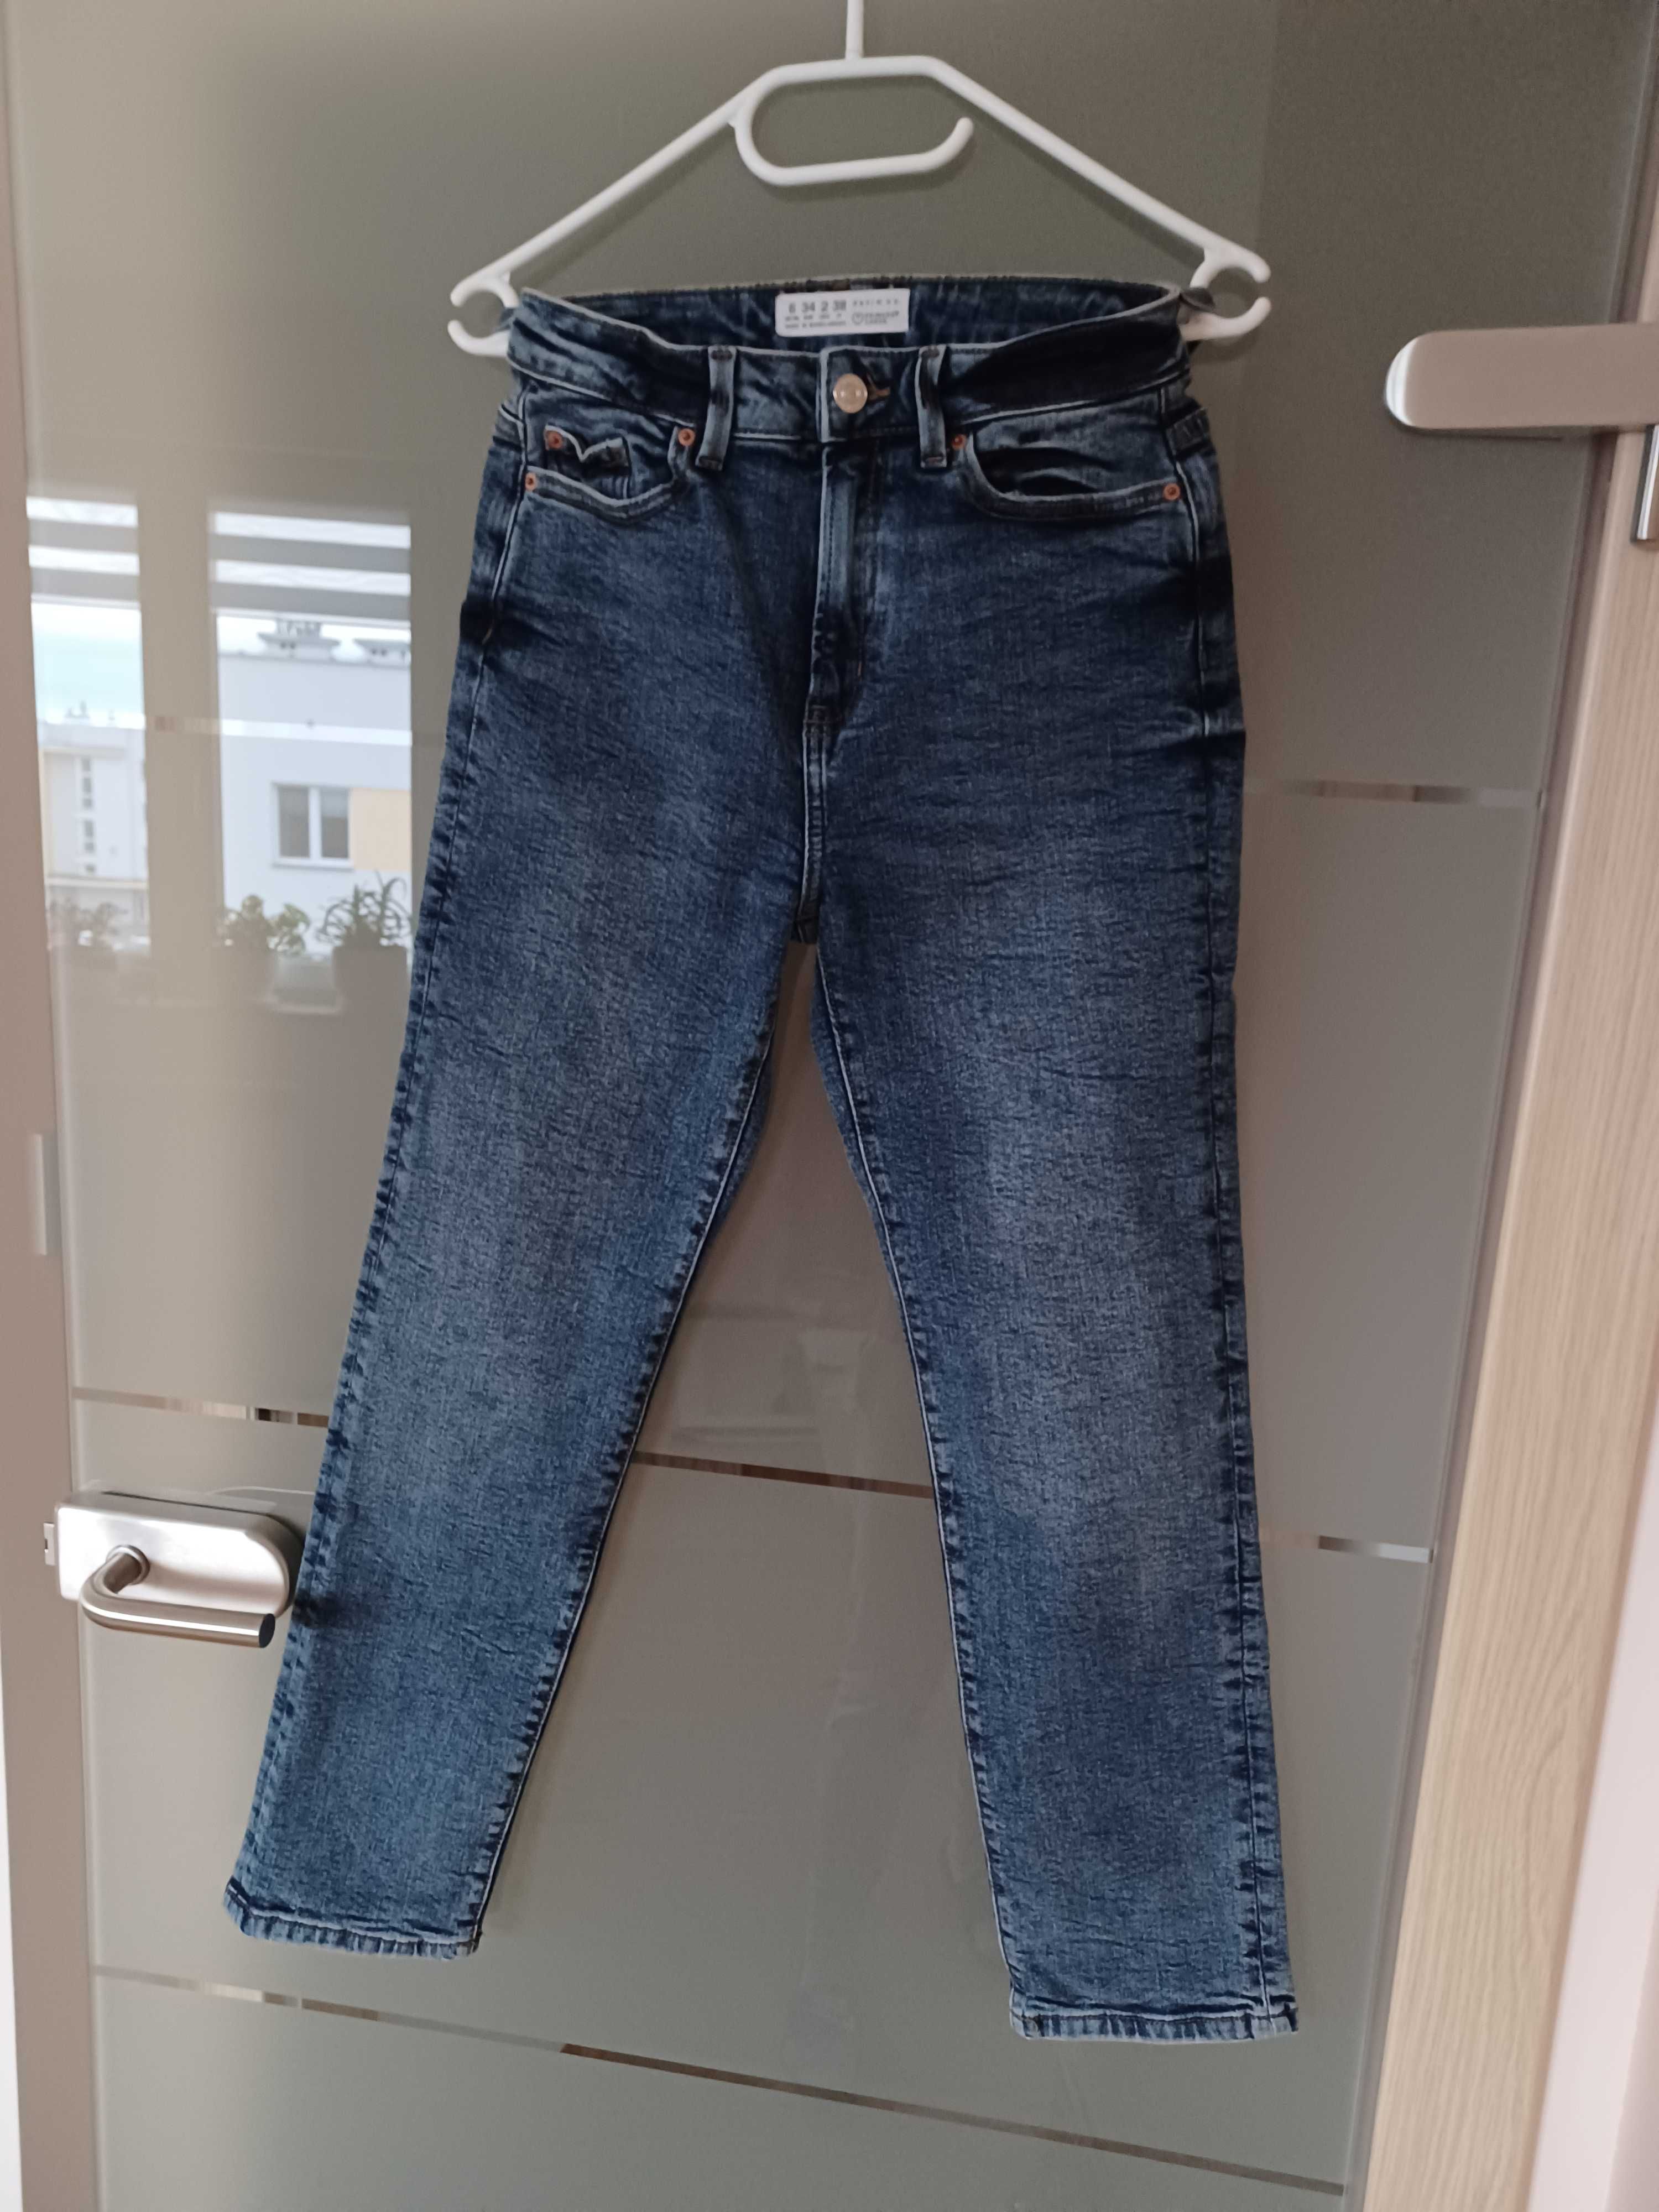 bb6. Jeansowe Spodnie typ Mom Fit Jeans marki Denim Co rozmiar 34.